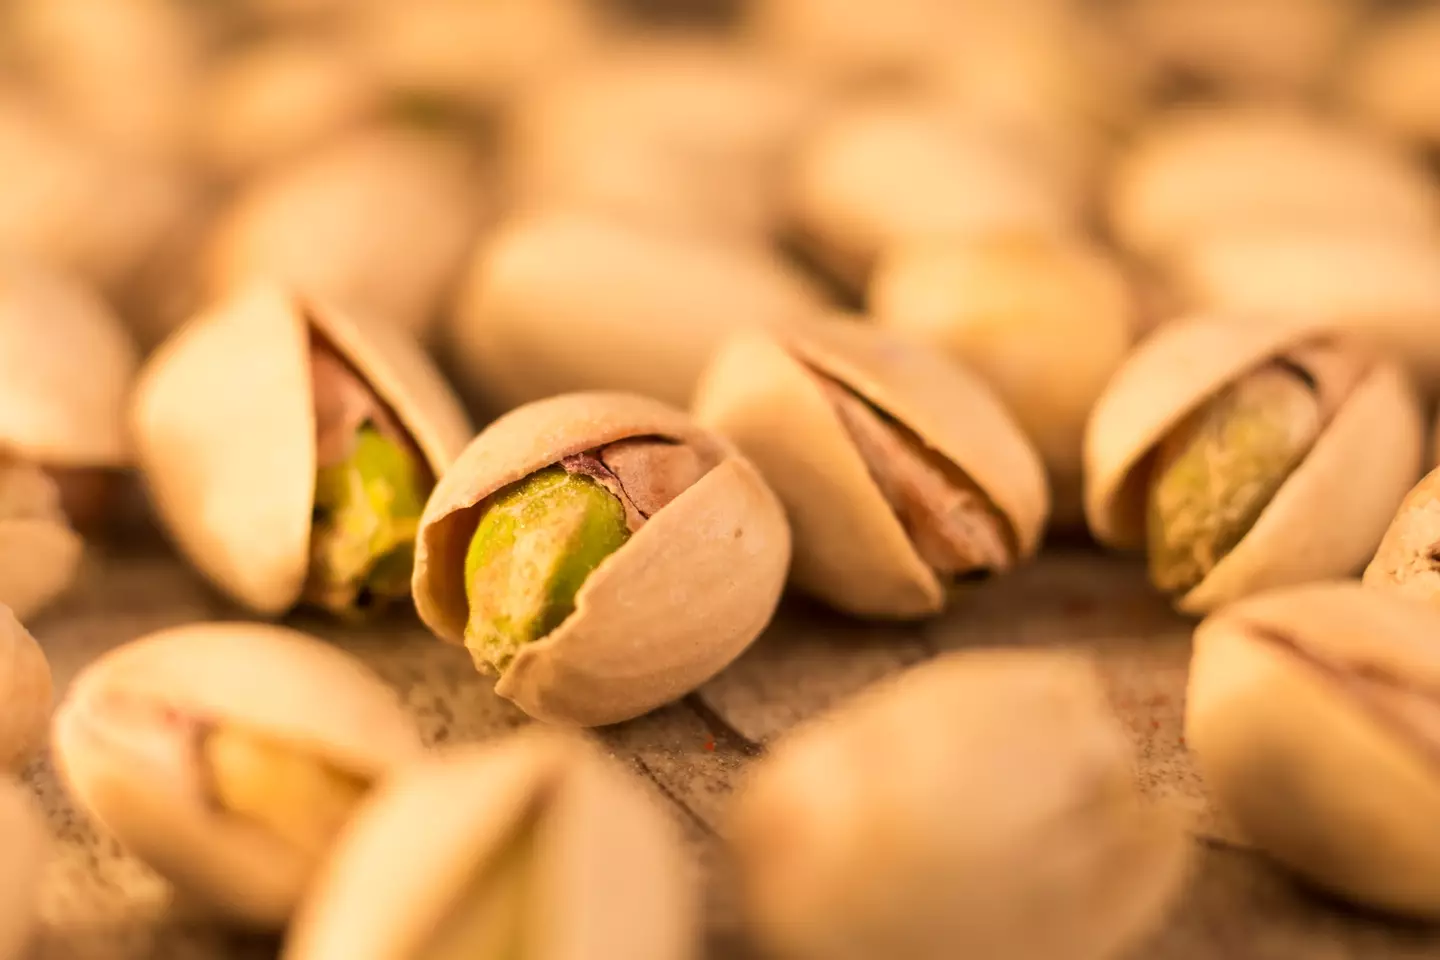 How do you open pistachios? (